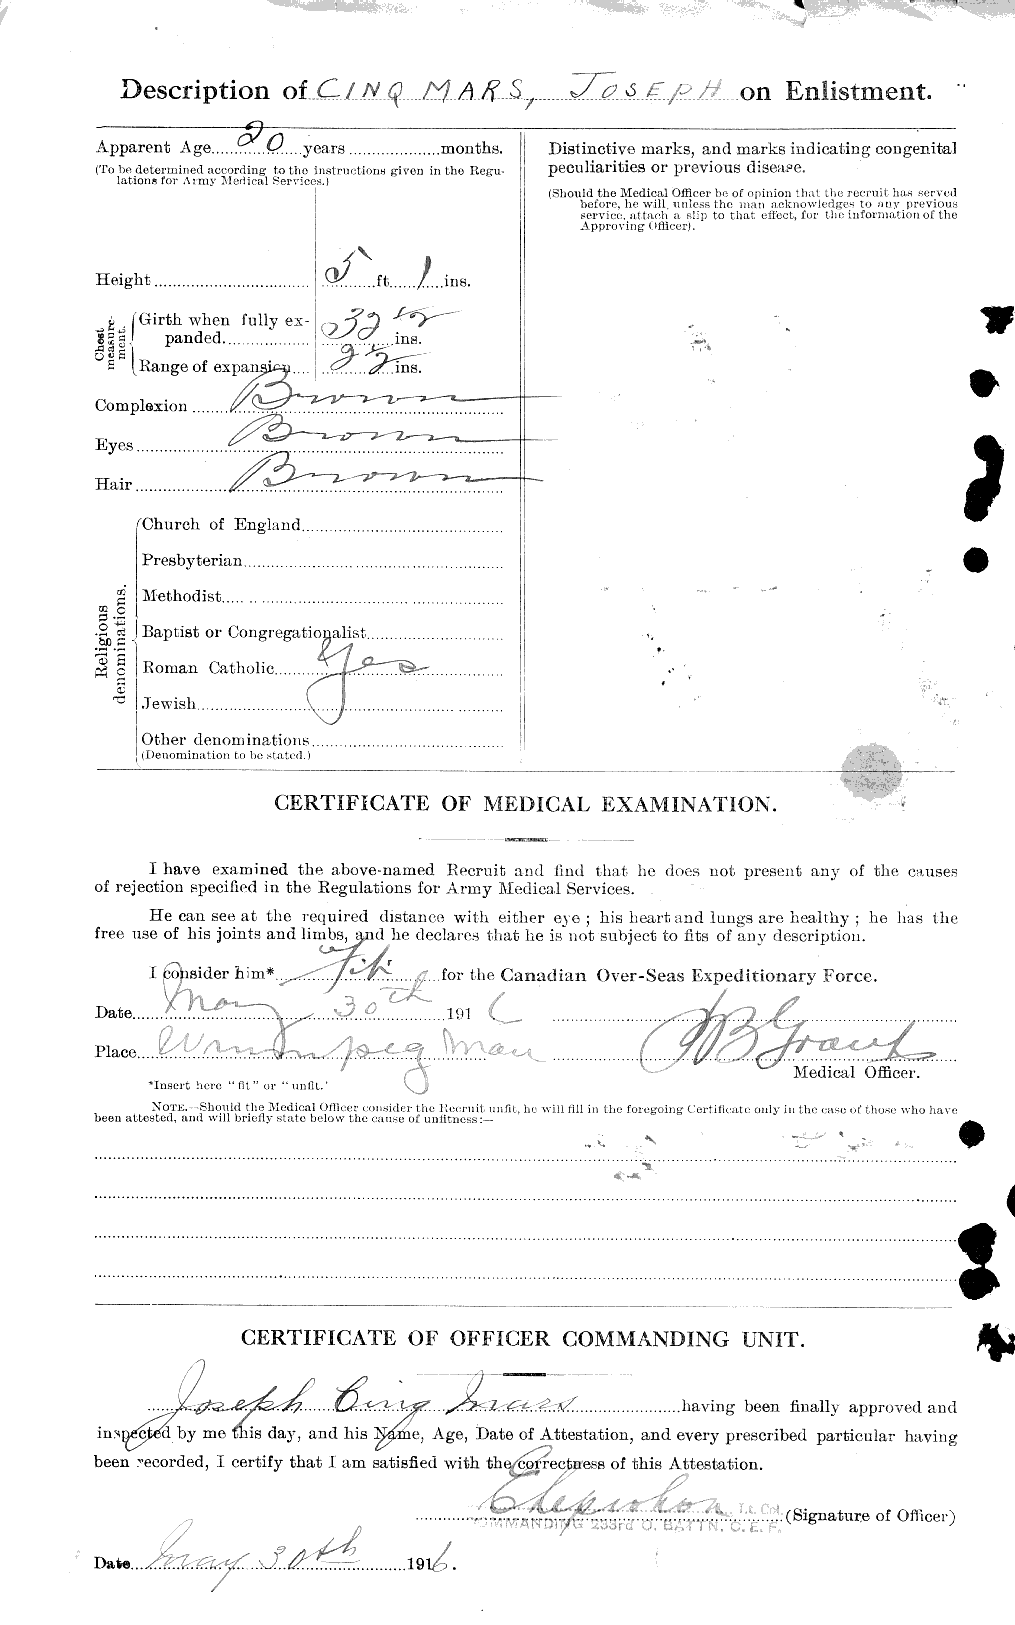 Dossiers du Personnel de la Première Guerre mondiale - CEC 020516b